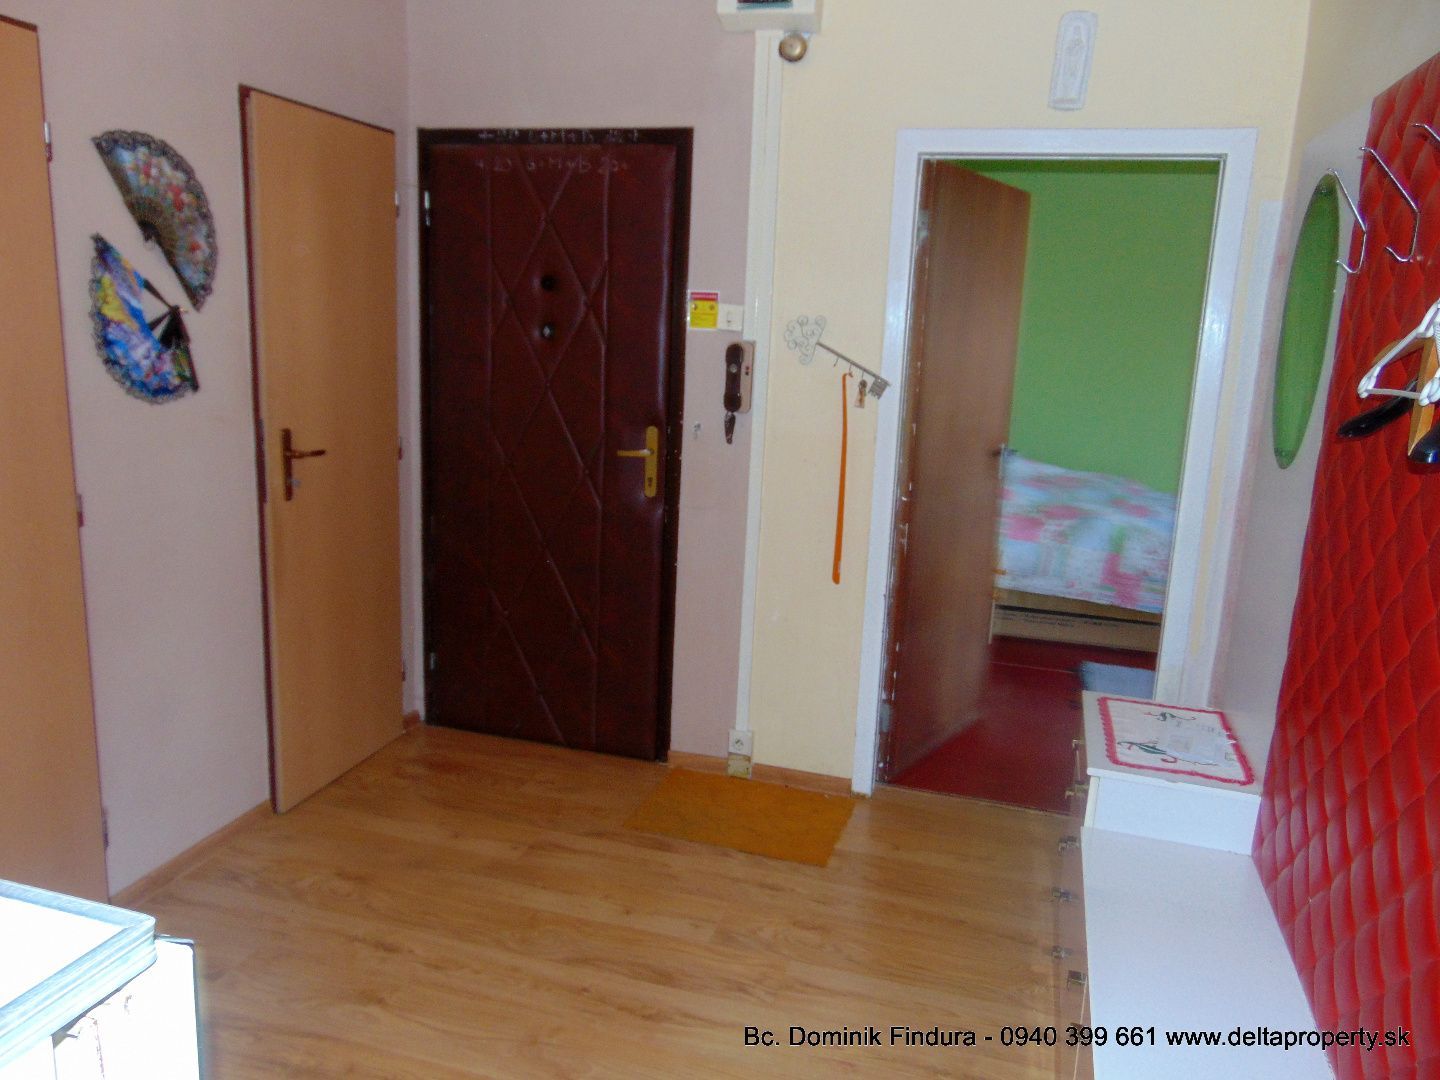 DELTA - Slnečný 3-izbový byt s loggiou na predaj Sp.Nová Ves - Mier